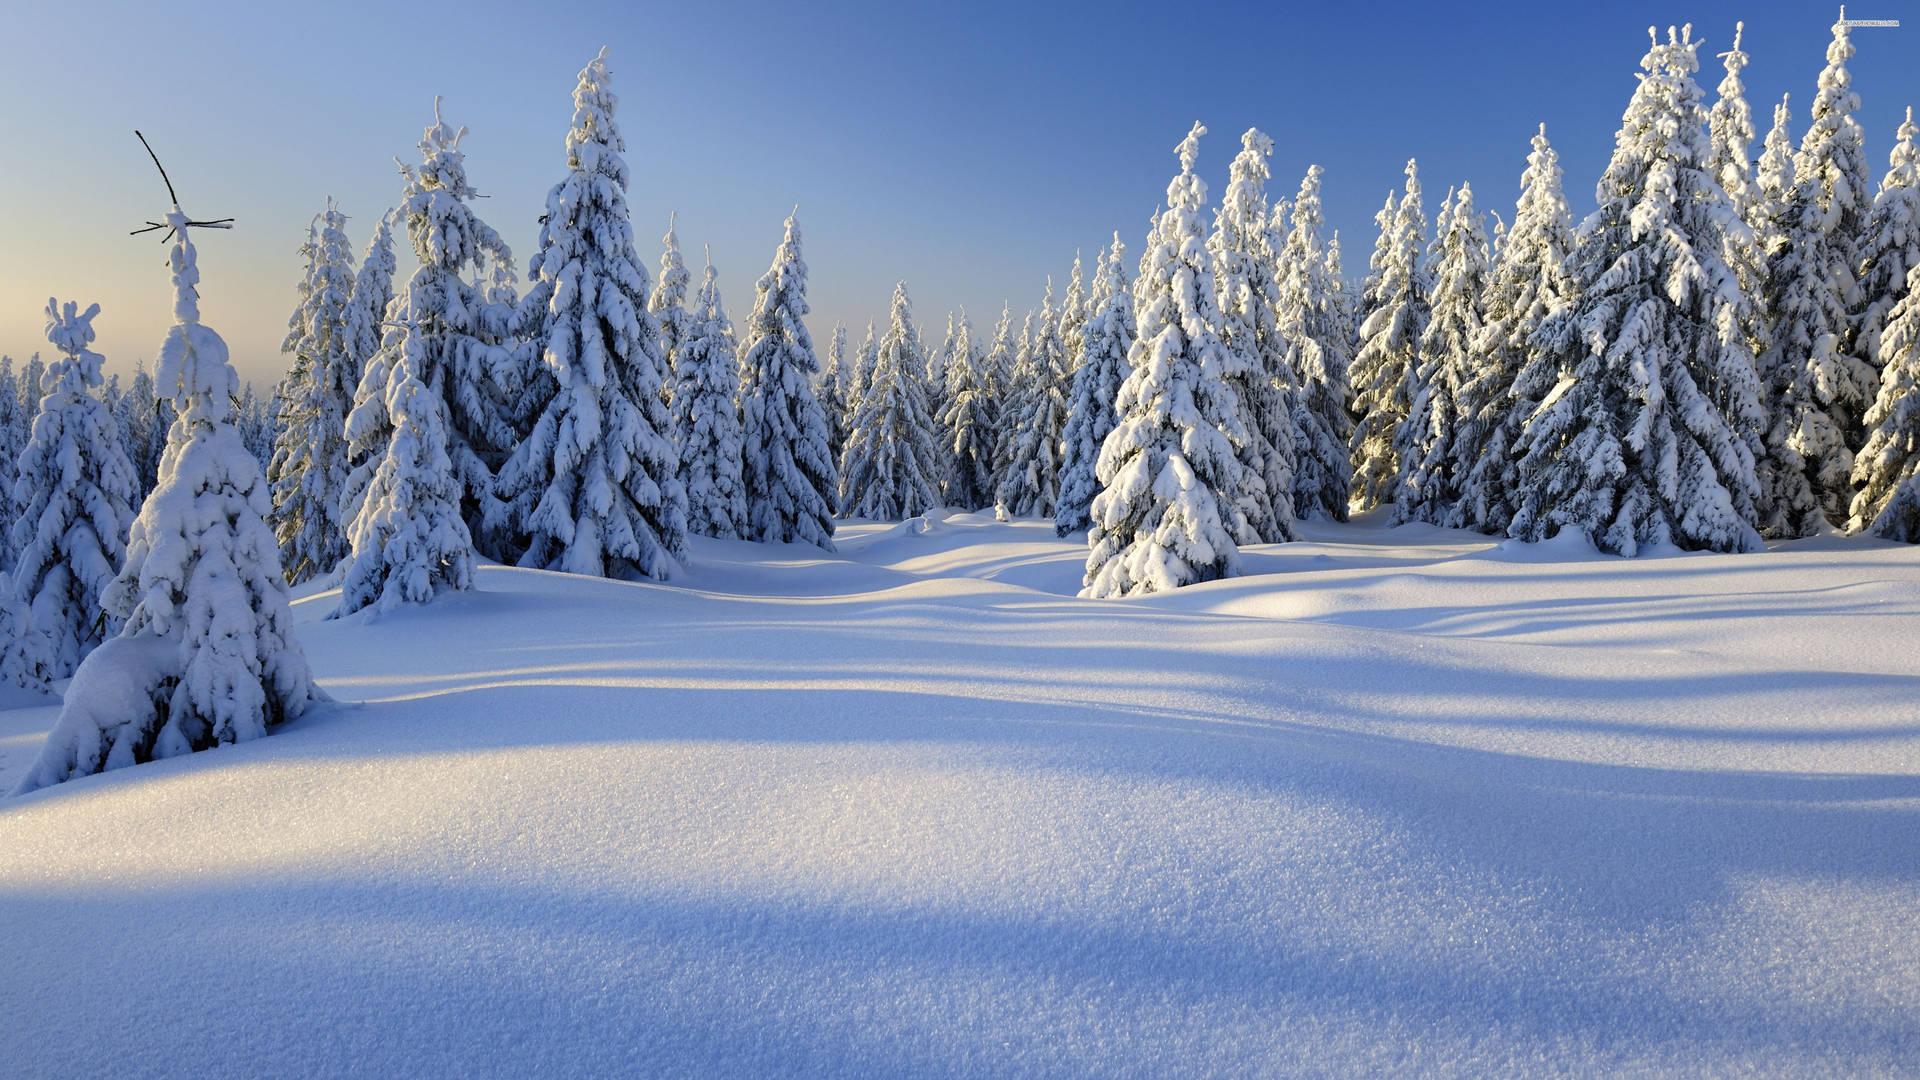 Tag det fantastiske udseende af vinterens skønhed Wallpaper